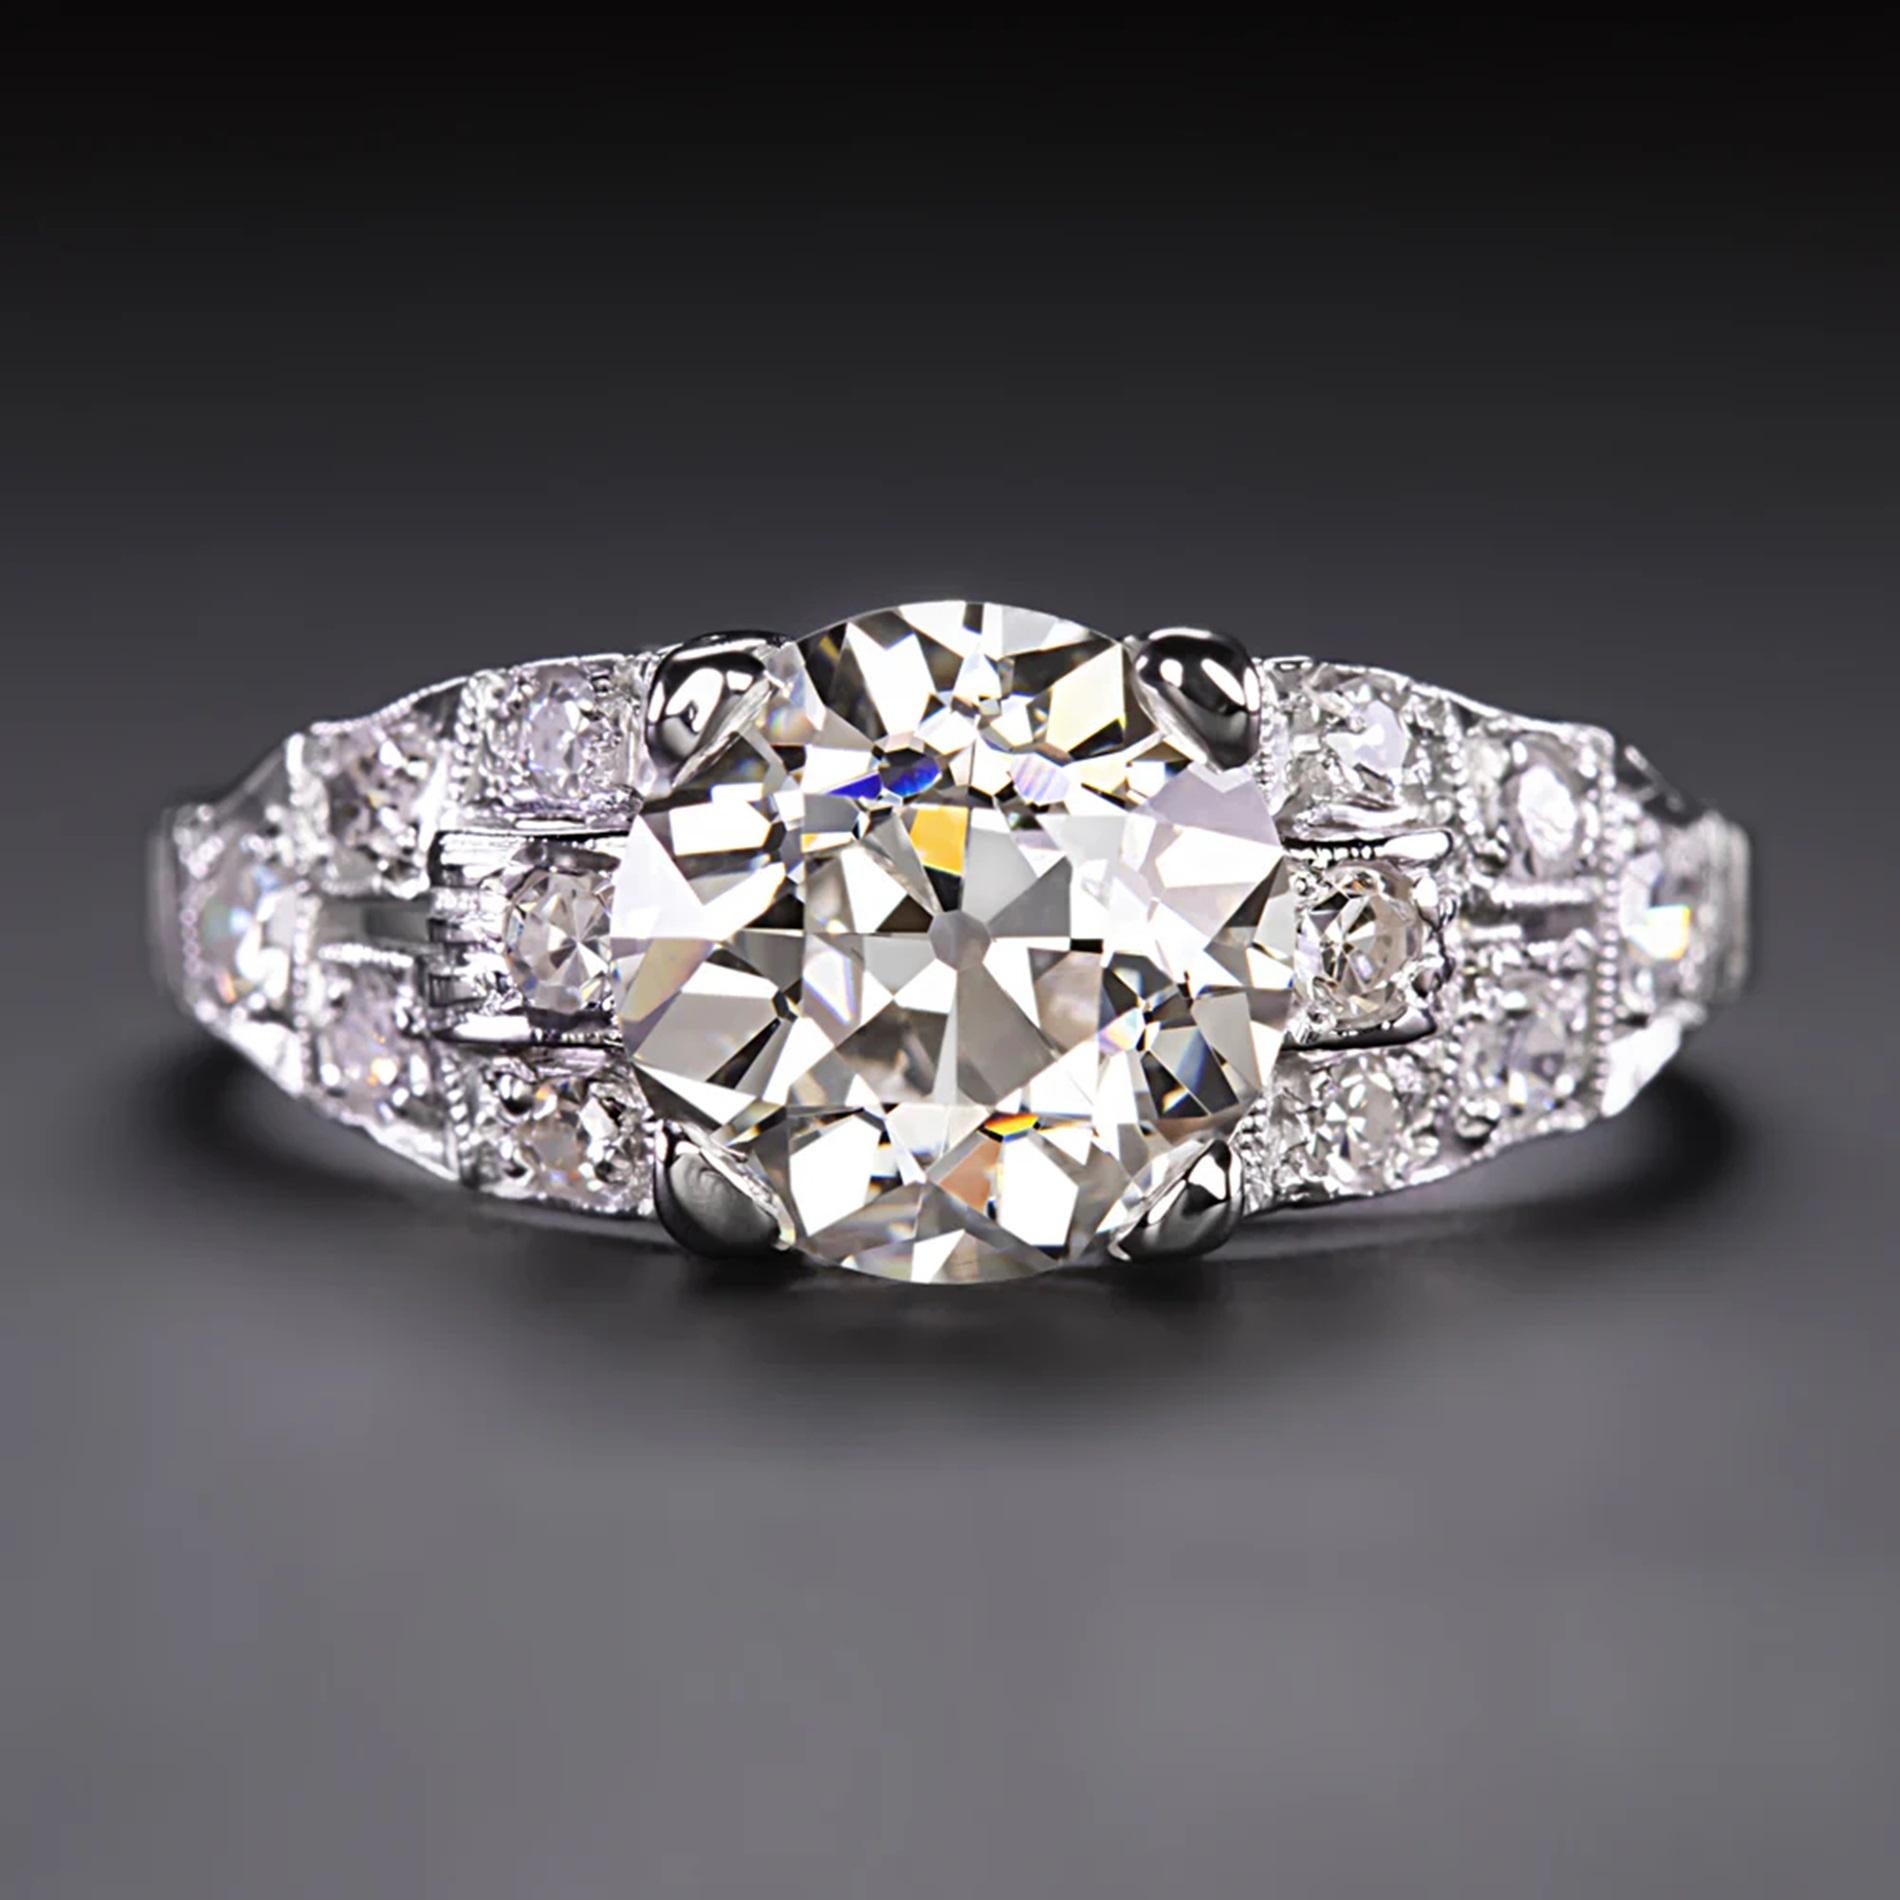 Dieser wunderschöne diamantene Verlobungsring besticht durch einen beeindruckend großen Diamanten im Übergangsschliff von 1,84 Karat in der Mitte und eine prächtige, mit Diamanten besetzte Fläche! Dieses handgefertigte Stück aus der Zeit des Art